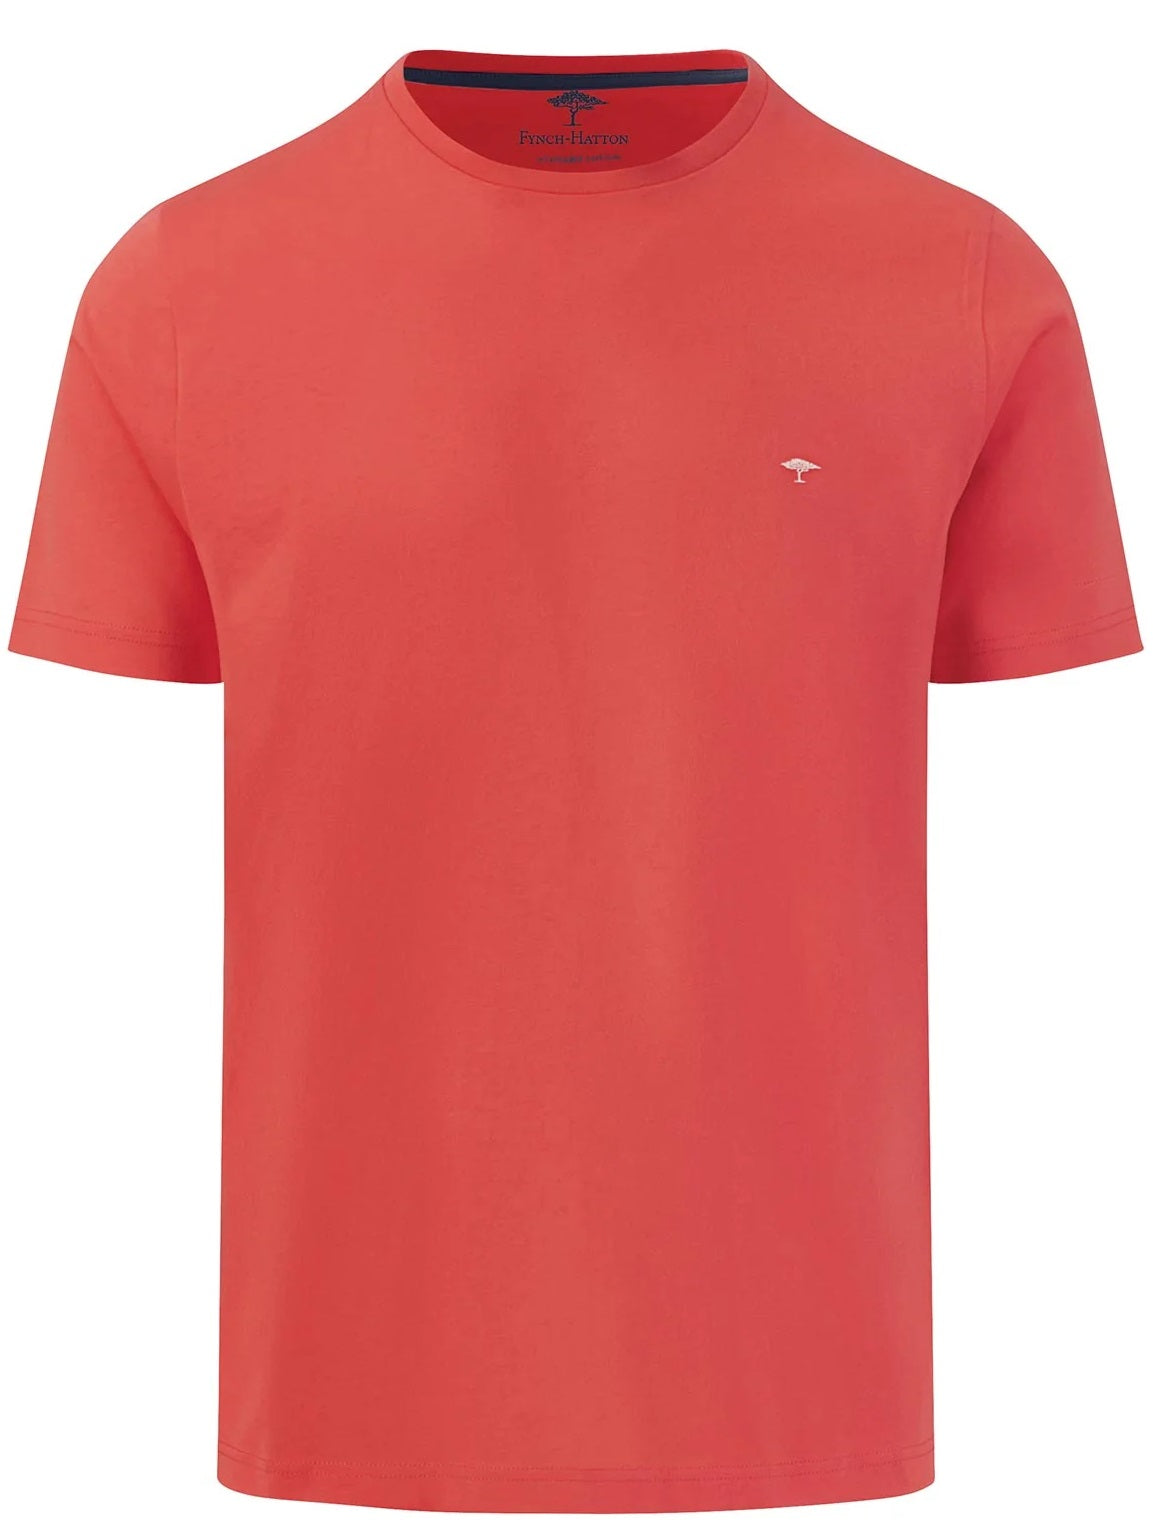 FYNCH HATTON T-Shirt - Men's Round Neck – Orient Red